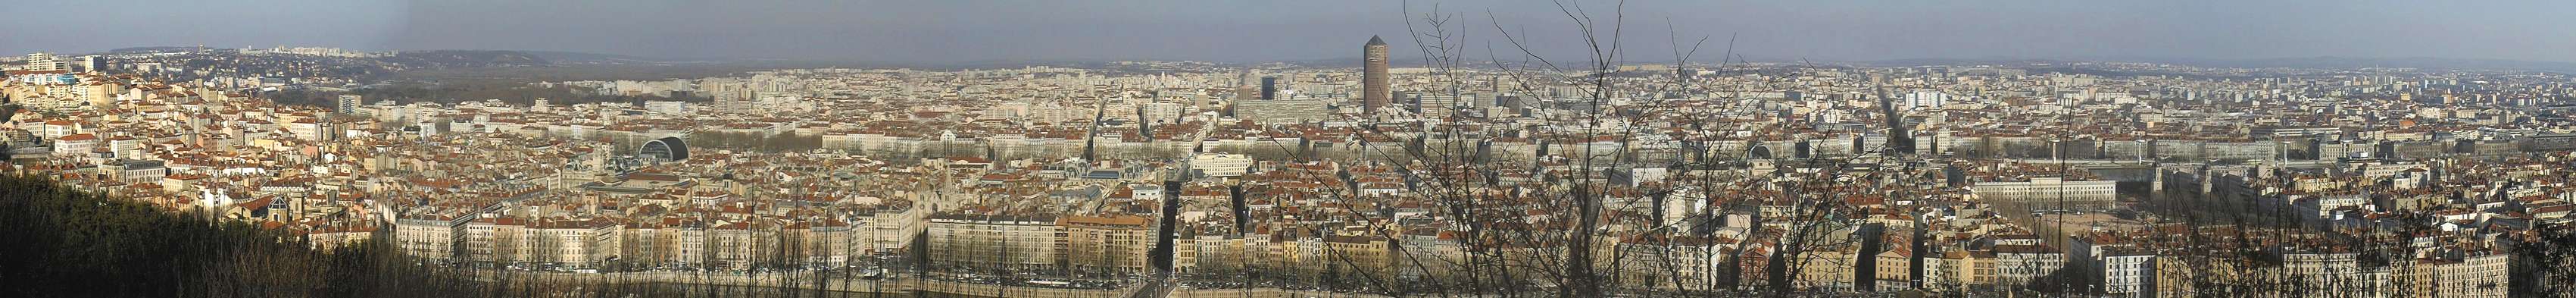 Panorama : Visite virtuelle de Lyon - vue de Fourvi�re.